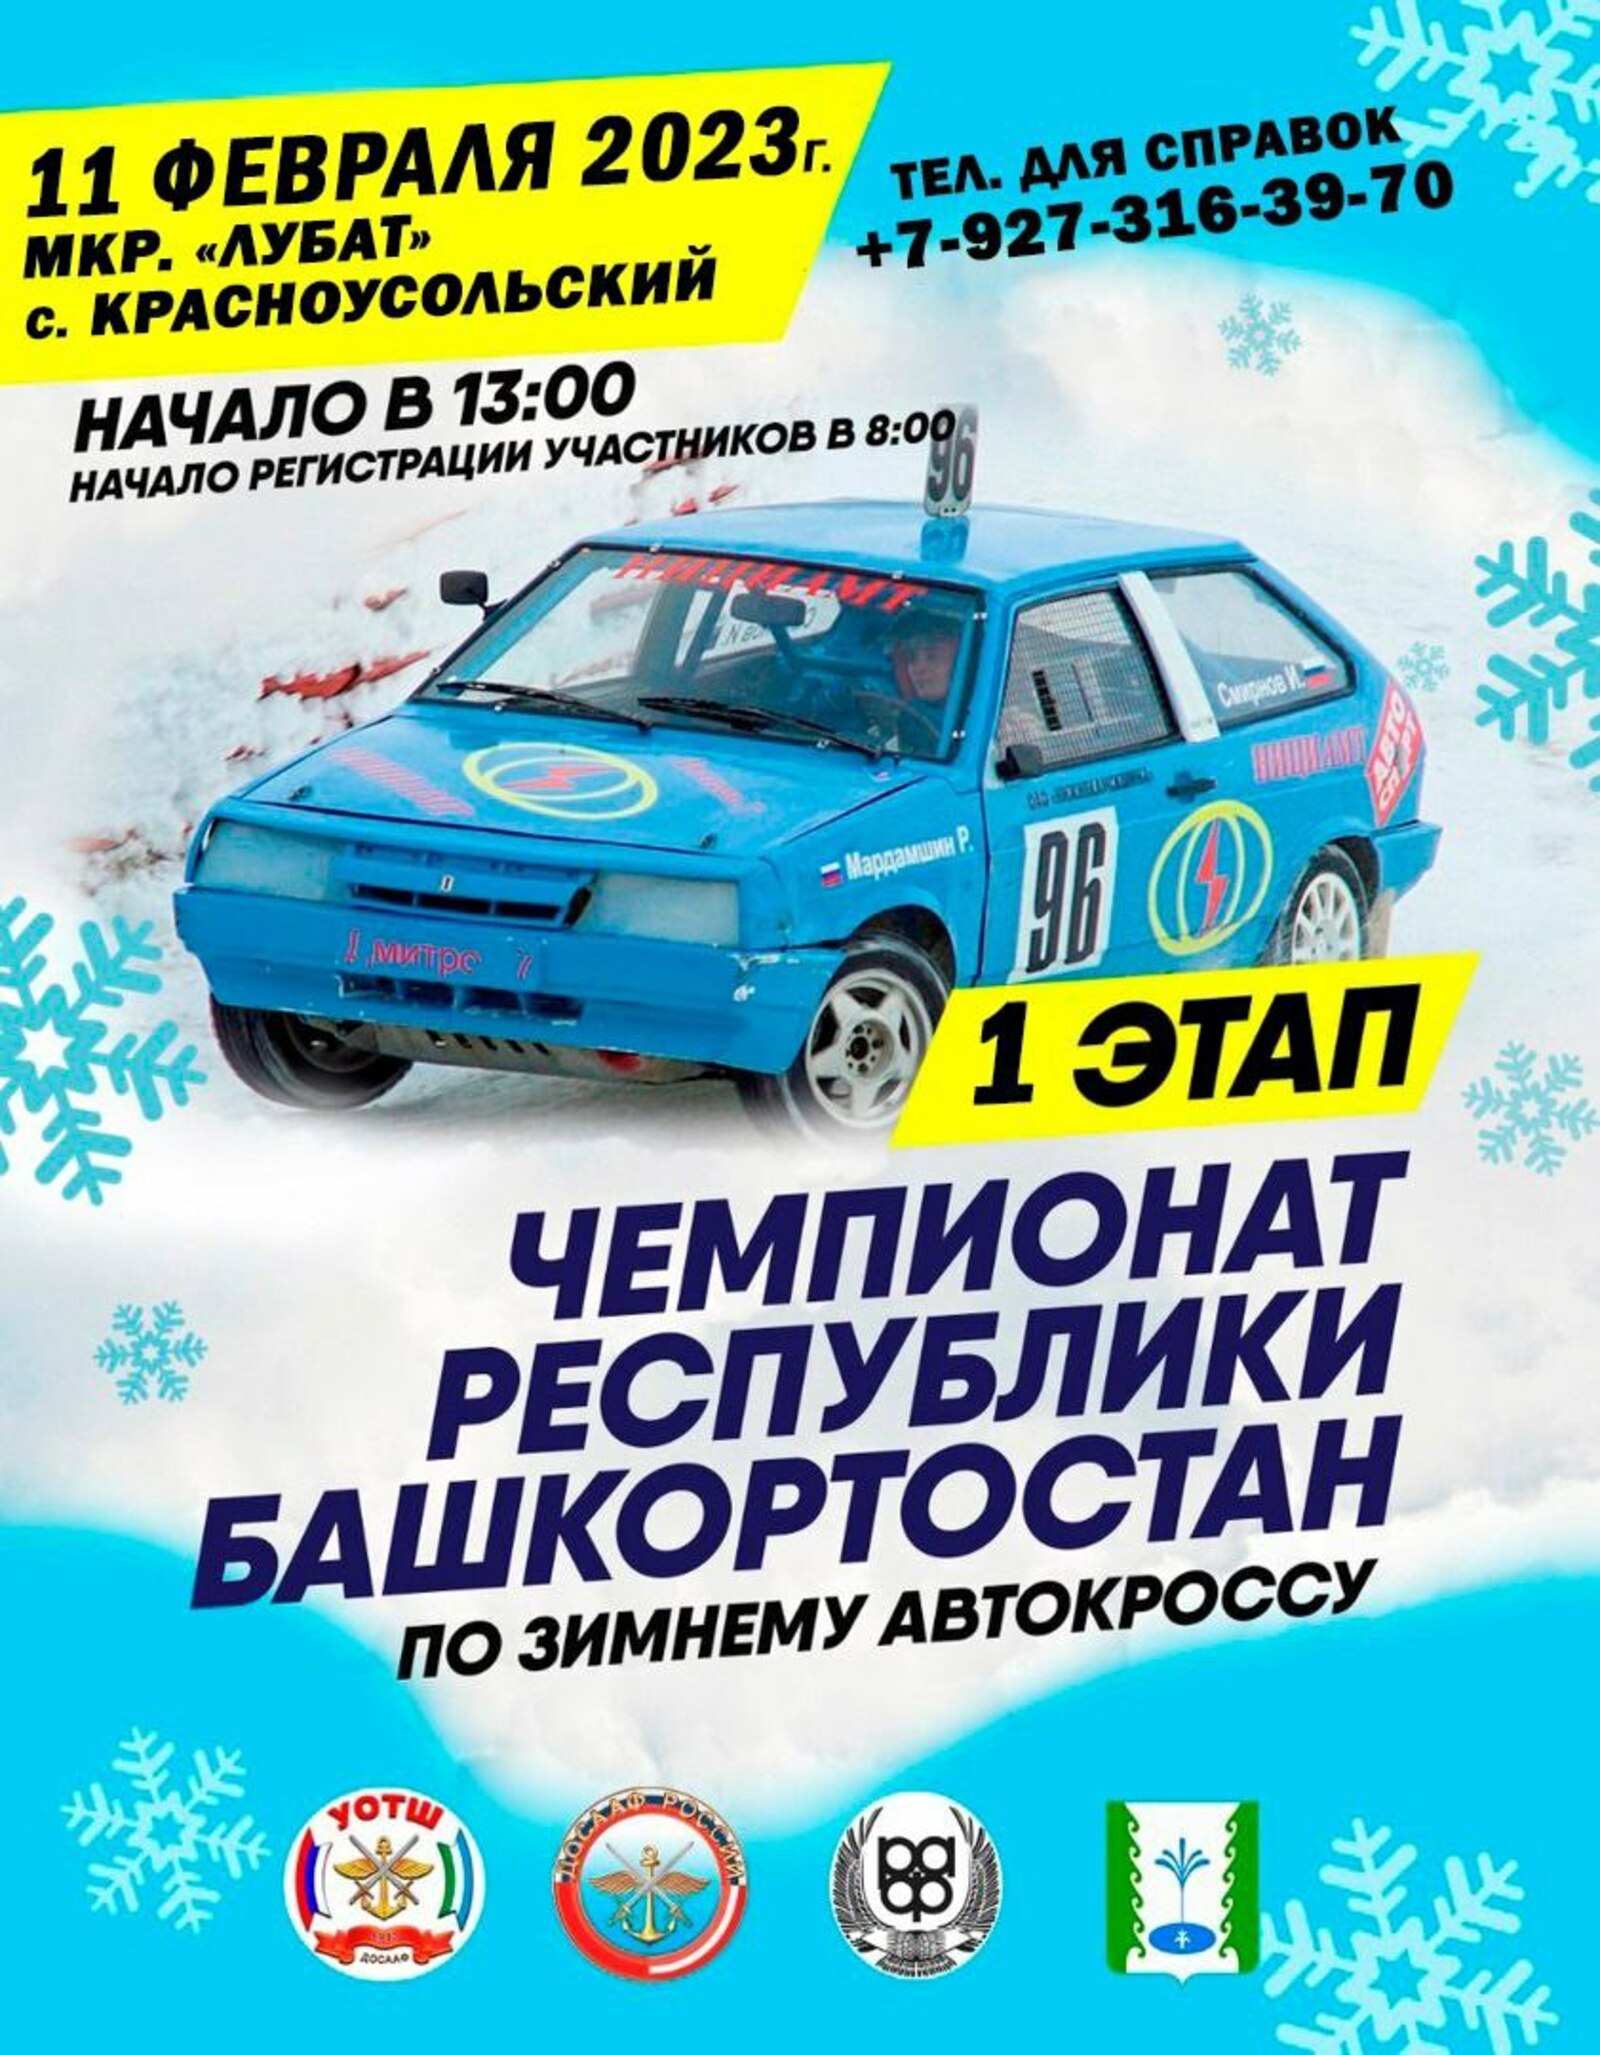 Зимние автогонки стартуют в субботу, 11 февраля!